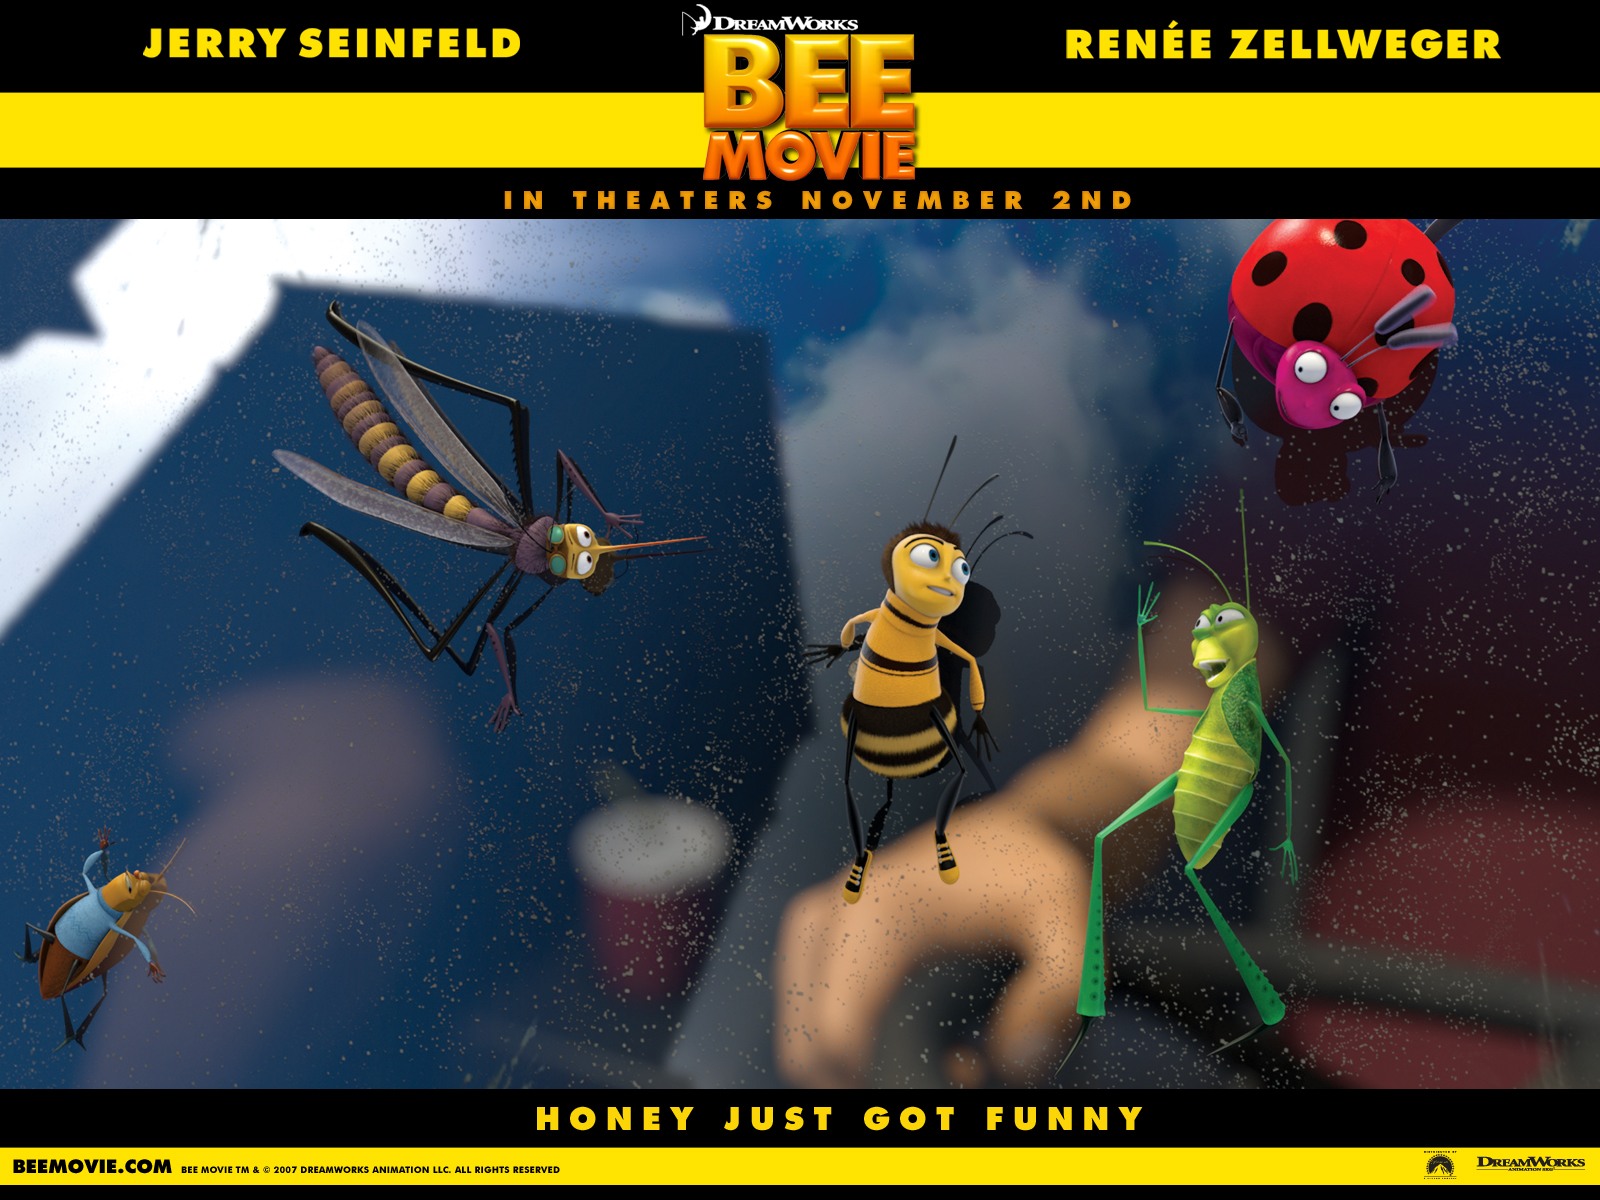 壁纸1600x1200电影壁纸 蜜蜂总动员 一只小蜜蜂 Bee Movie 2007 蜂电影 蜜蜂总动员壁纸 Movie Wallpaper Bee Movie 2007壁纸 《蜜蜂总动员 Bee Movie》壁纸 《蜜蜂总动员 Bee Movie》图片 《蜜蜂总动员 Bee Movie》素材 影视壁纸 影视图库 影视图片素材桌面壁纸